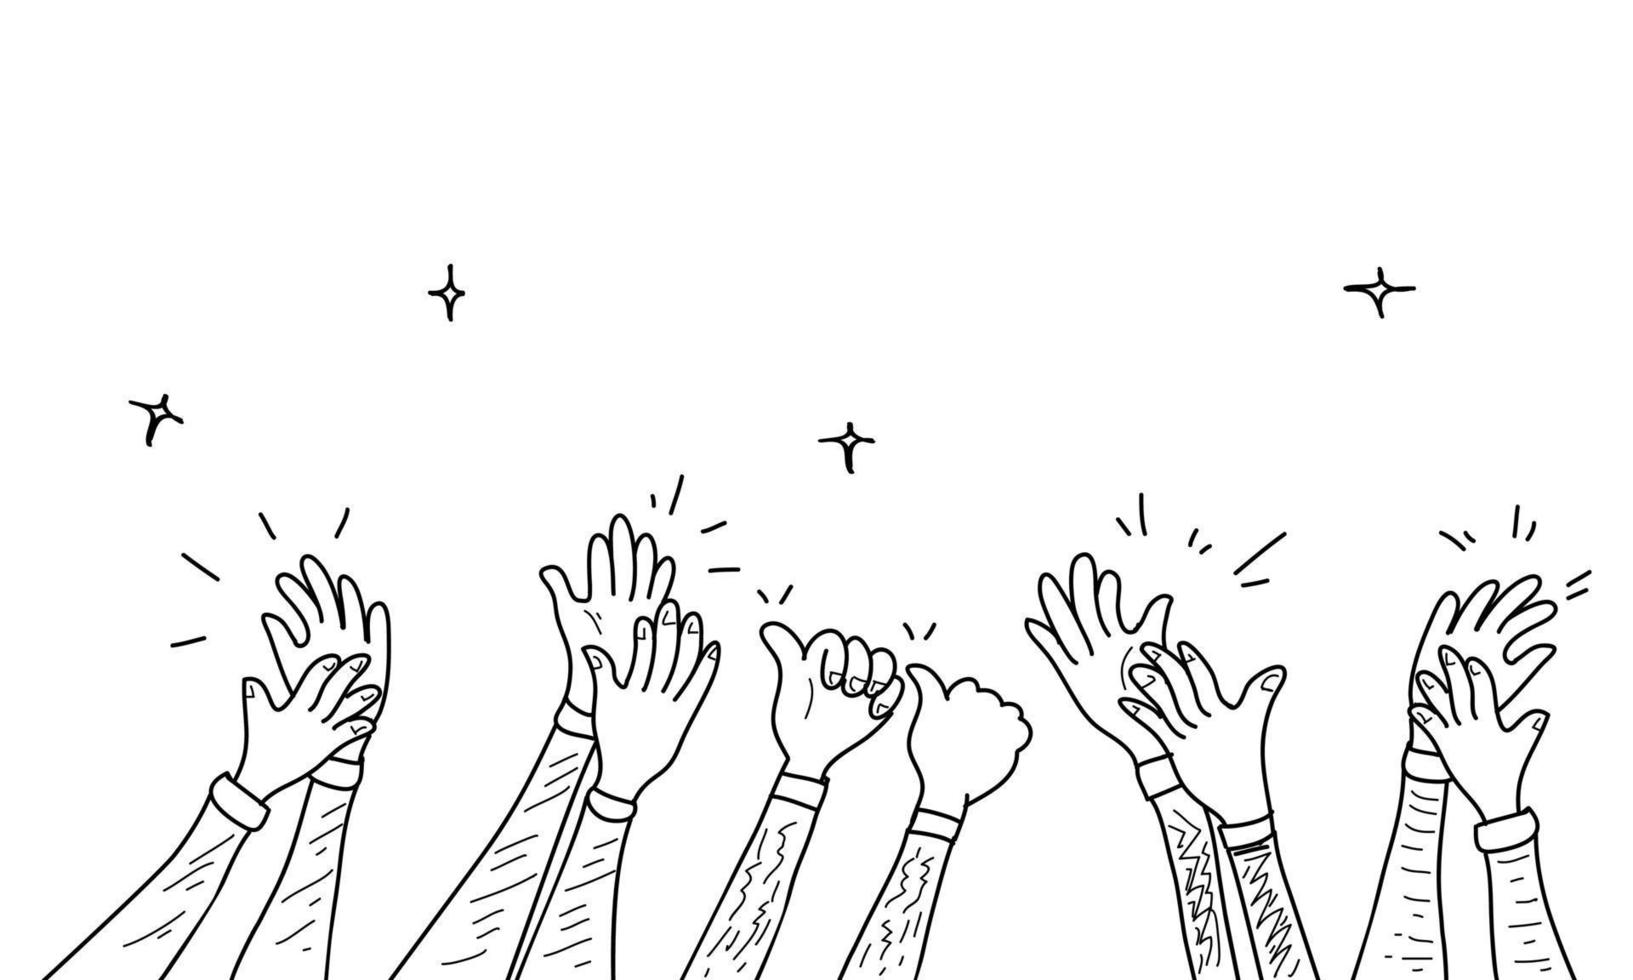 mão desenhada de mãos batendo palmas ovação. aplausos, polegares para cima gesto no estilo doodle, ilustração vetorial vetor